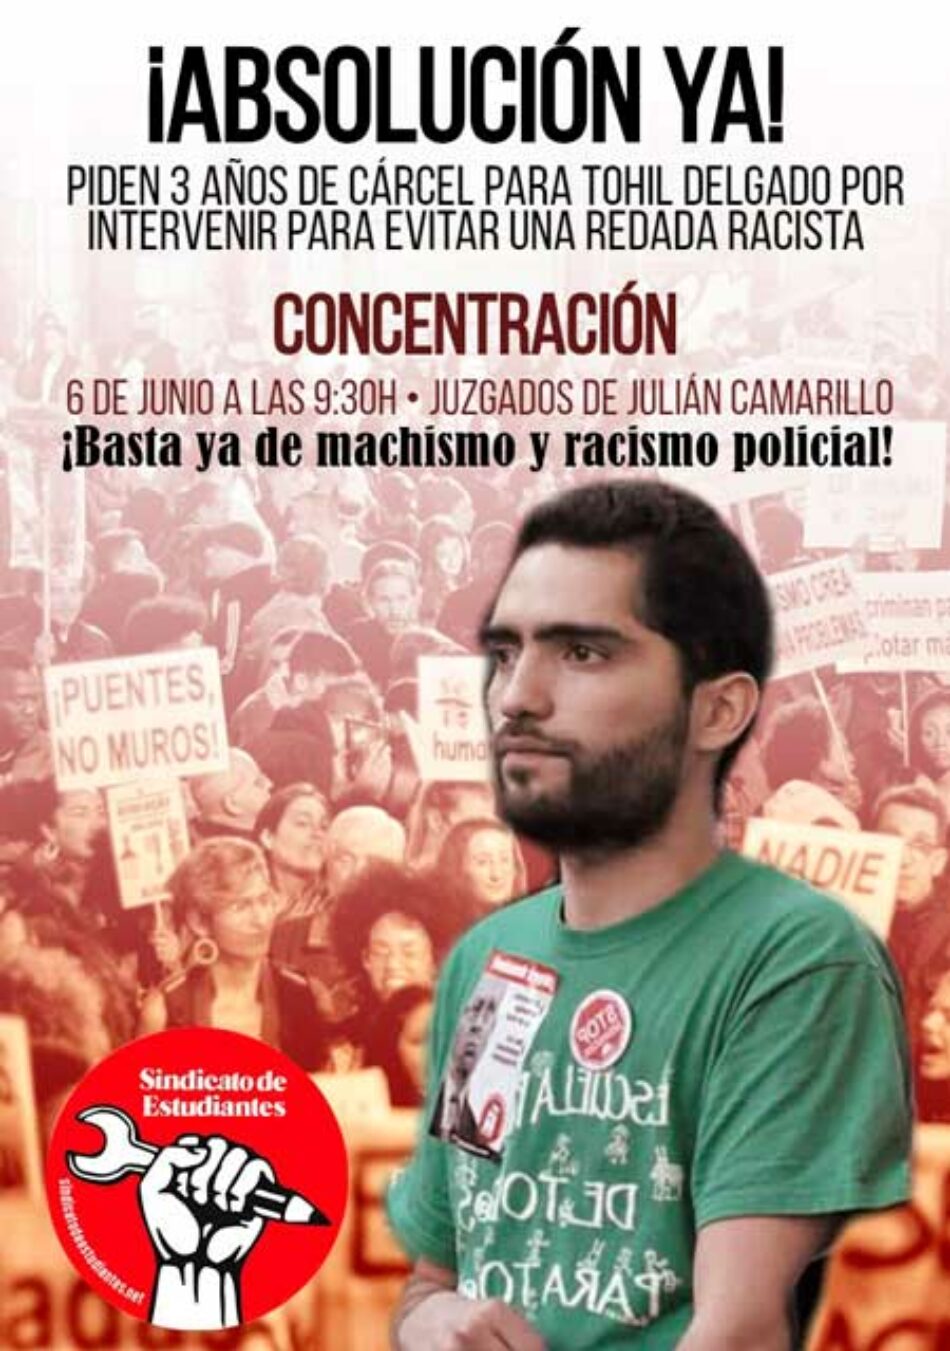 Piden tres años de prisión para Tohil Delgado, ex secretario general del Sindicato de Estudiantes, por intervenir contra una redada racista